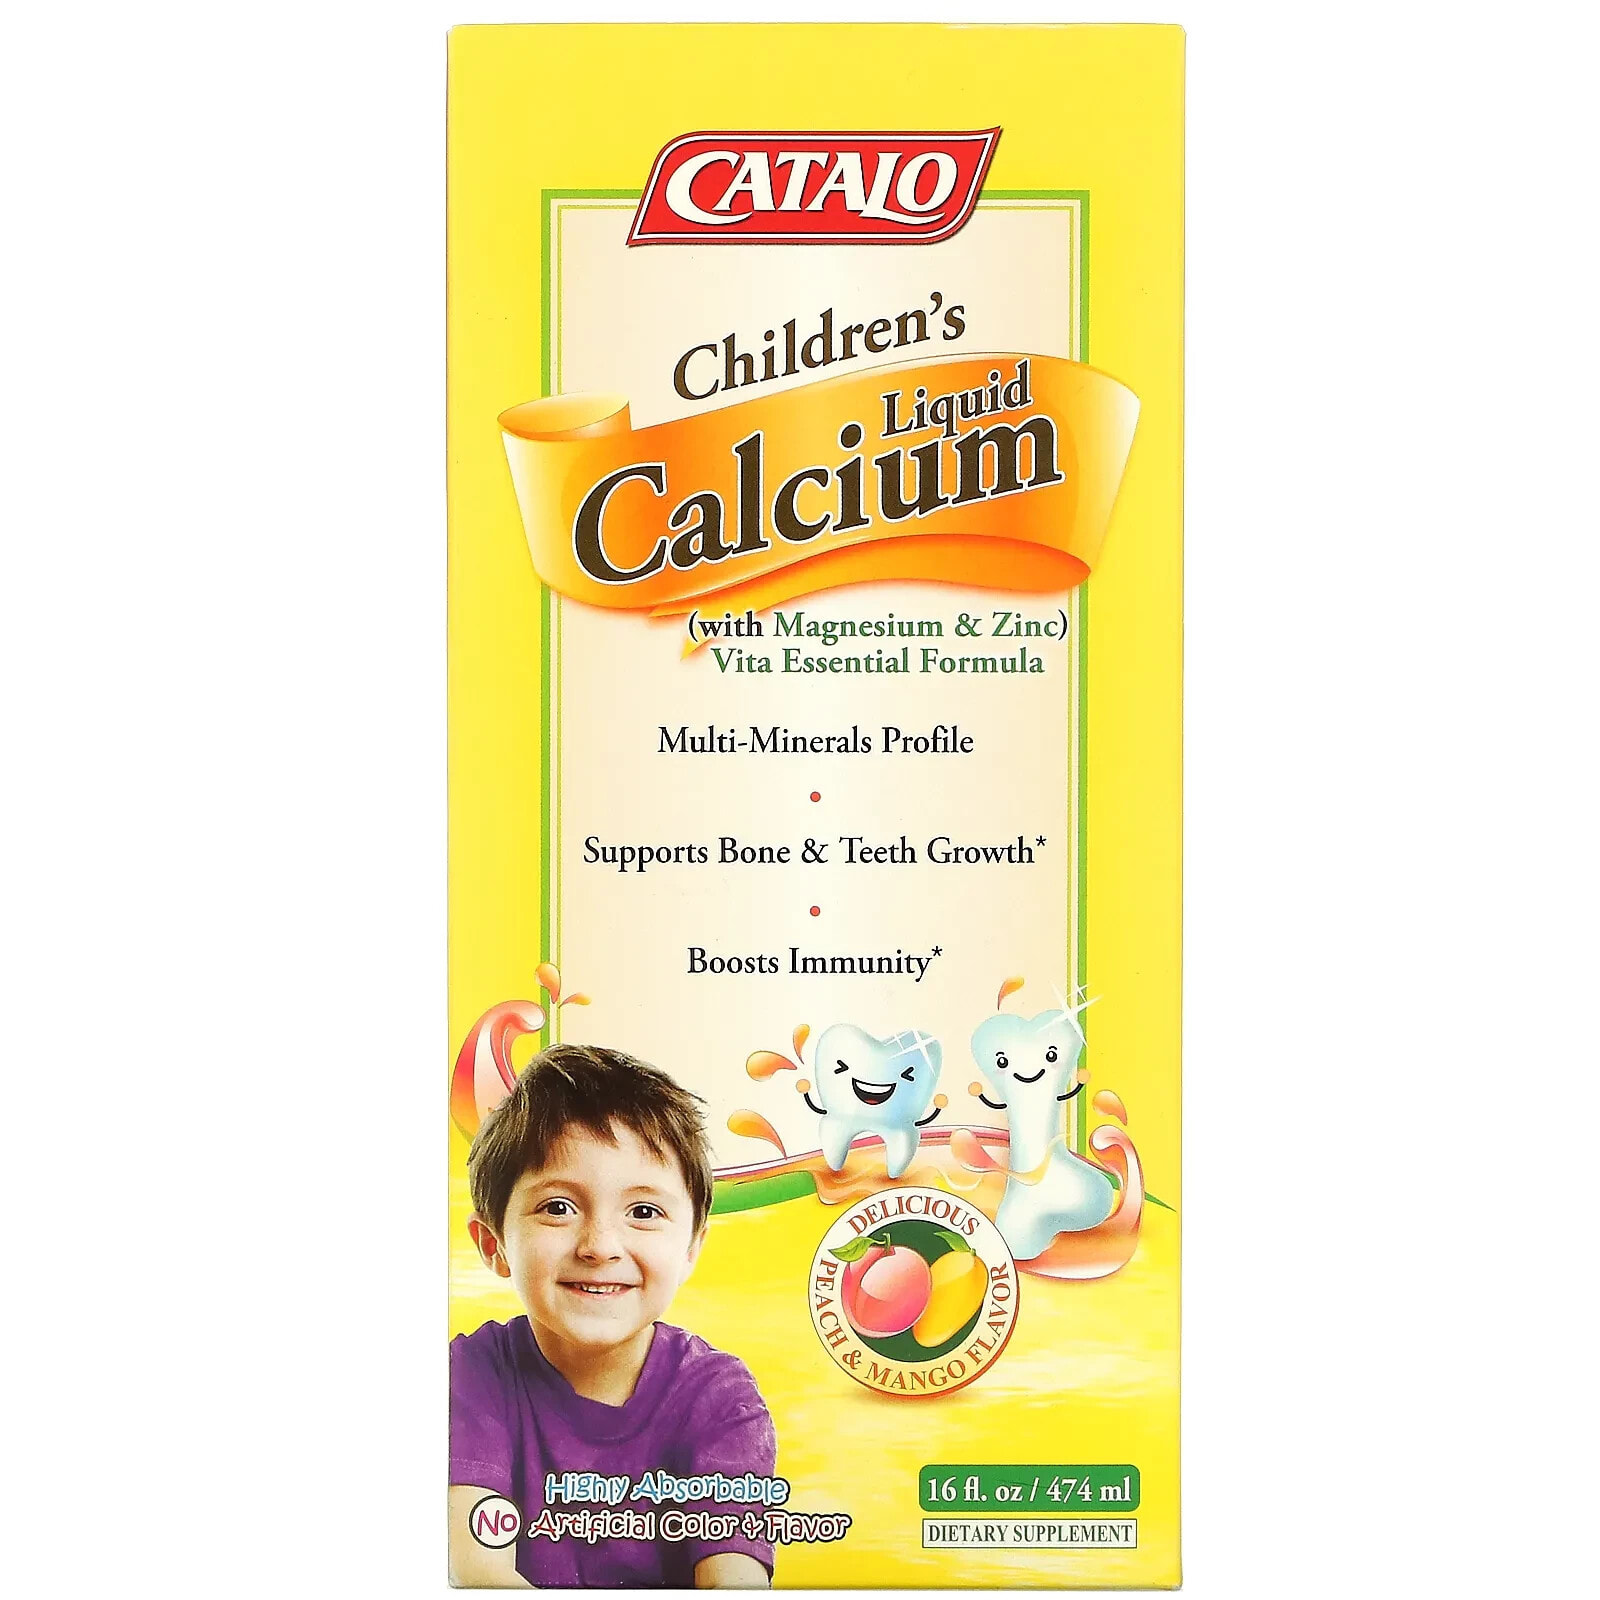 Катало Натуралс, жидкий кальций для детей с магнием и цинком, персик и манго 474 мл (16 жидк. унций)